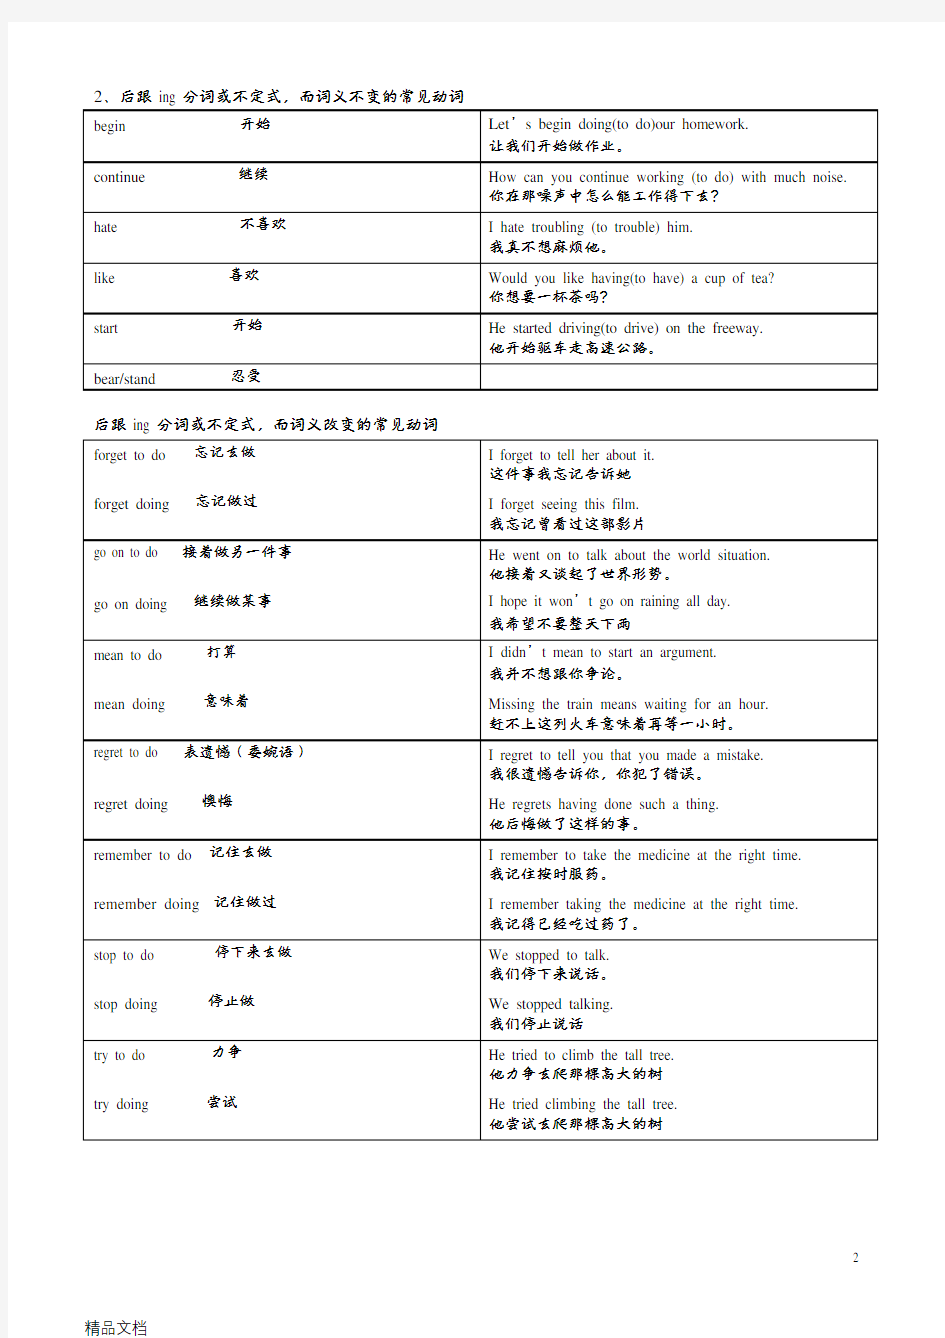 英语动词基本分类一览表讲解学习